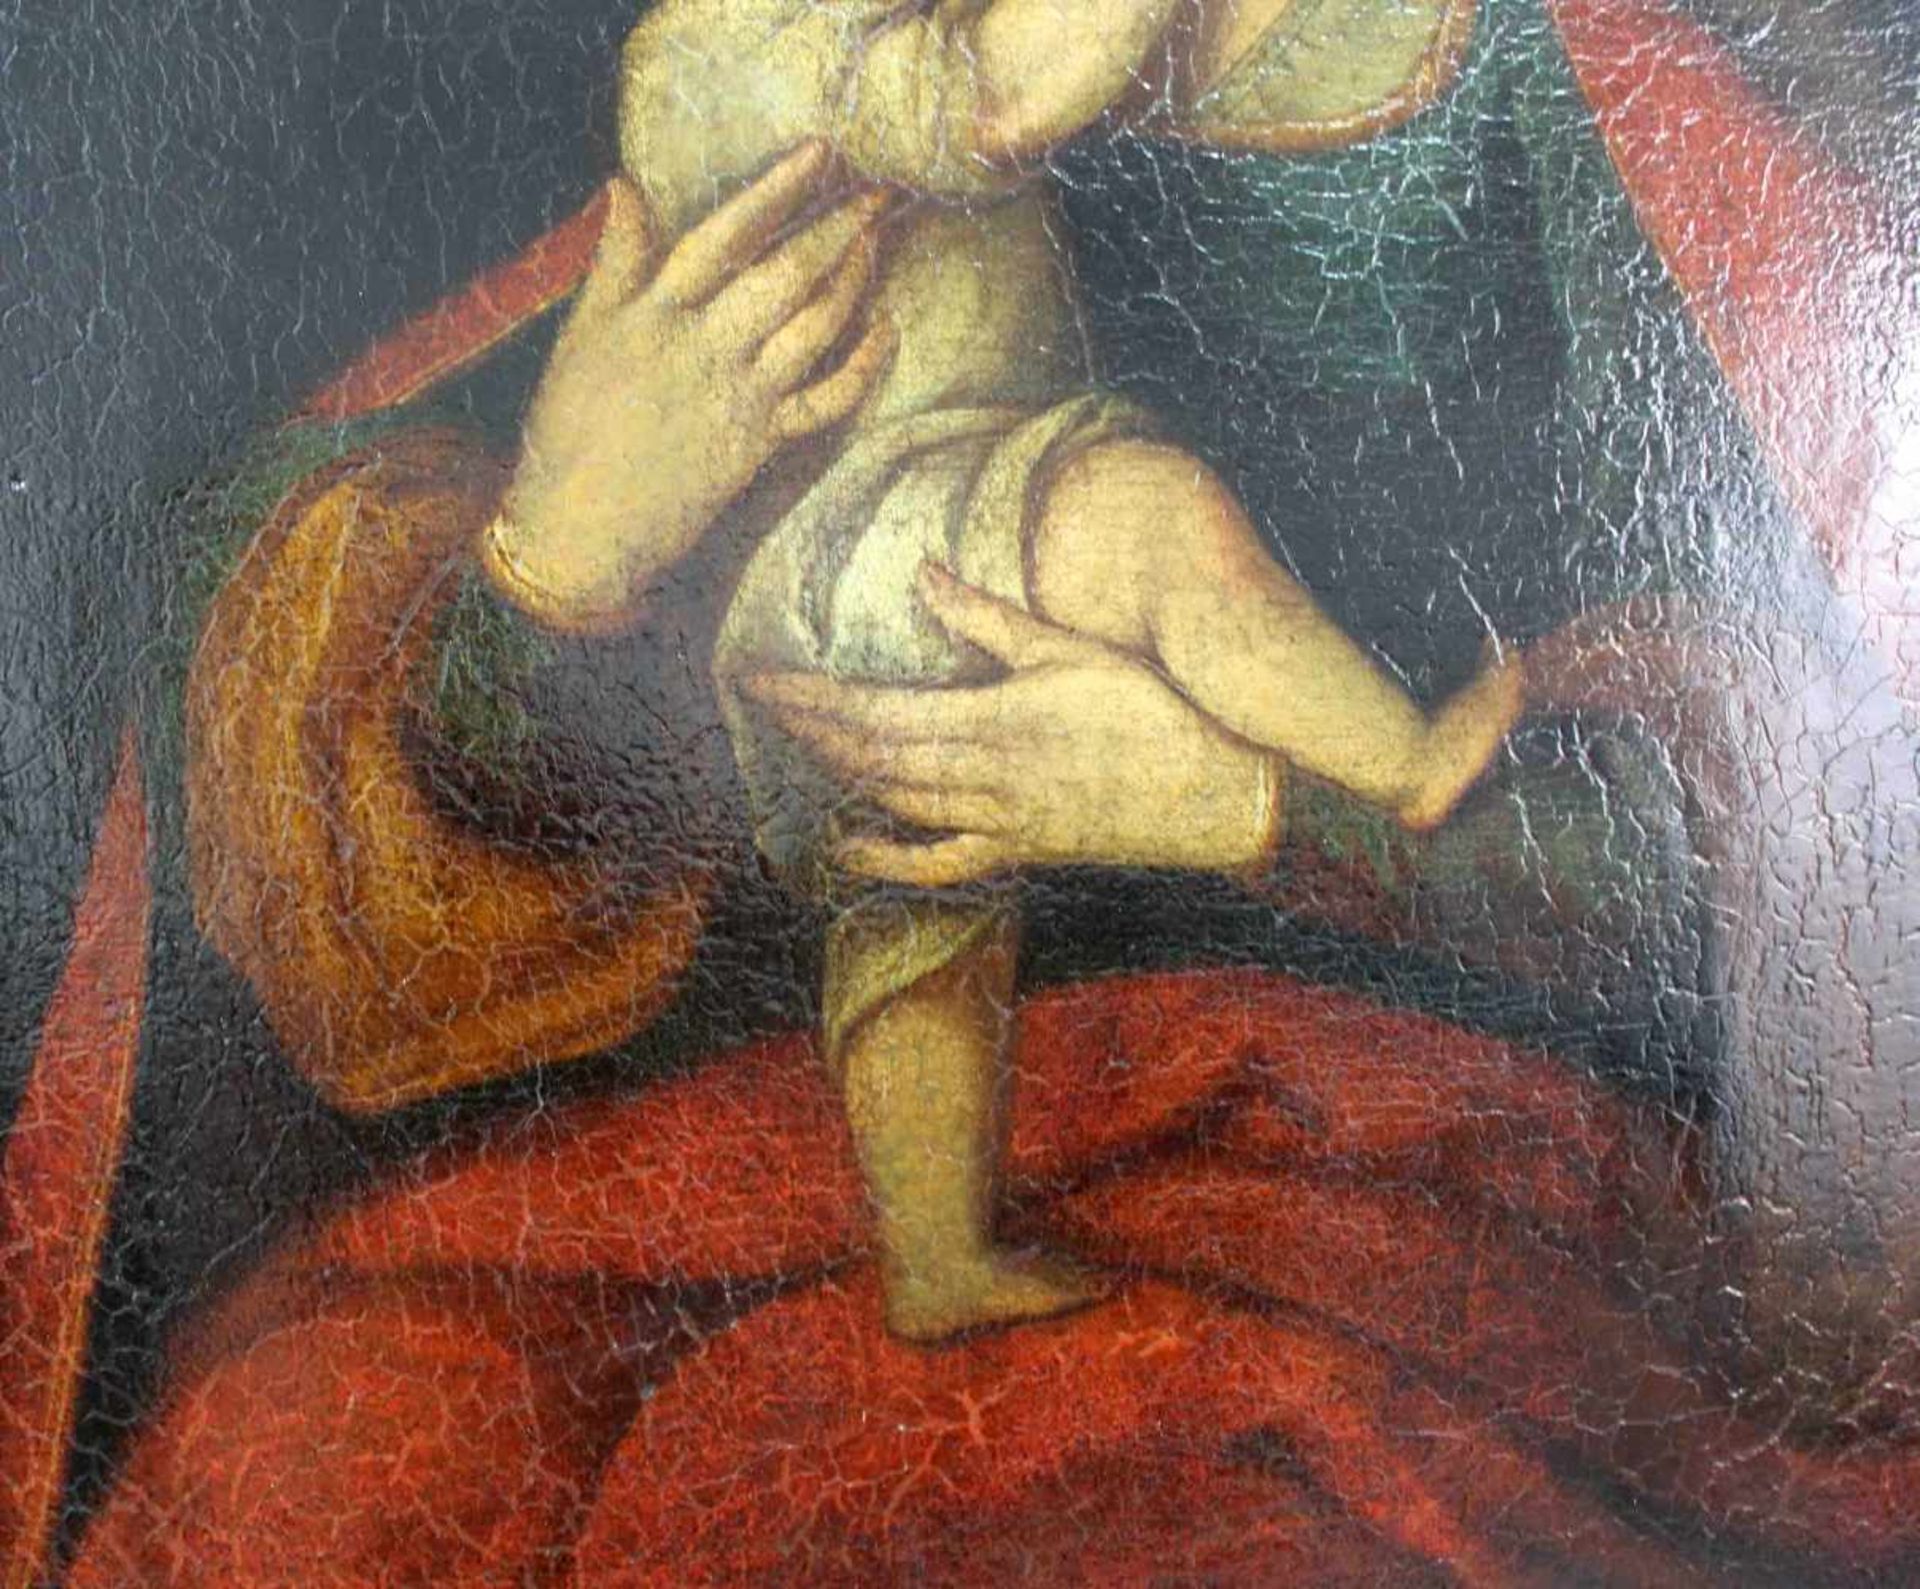 UNSIGNIERT (XVIII). Maria mit Jesus.66 cm x 54 cm. Öl auf Leinwand, u. a. doubliert. Keine - Image 5 of 7